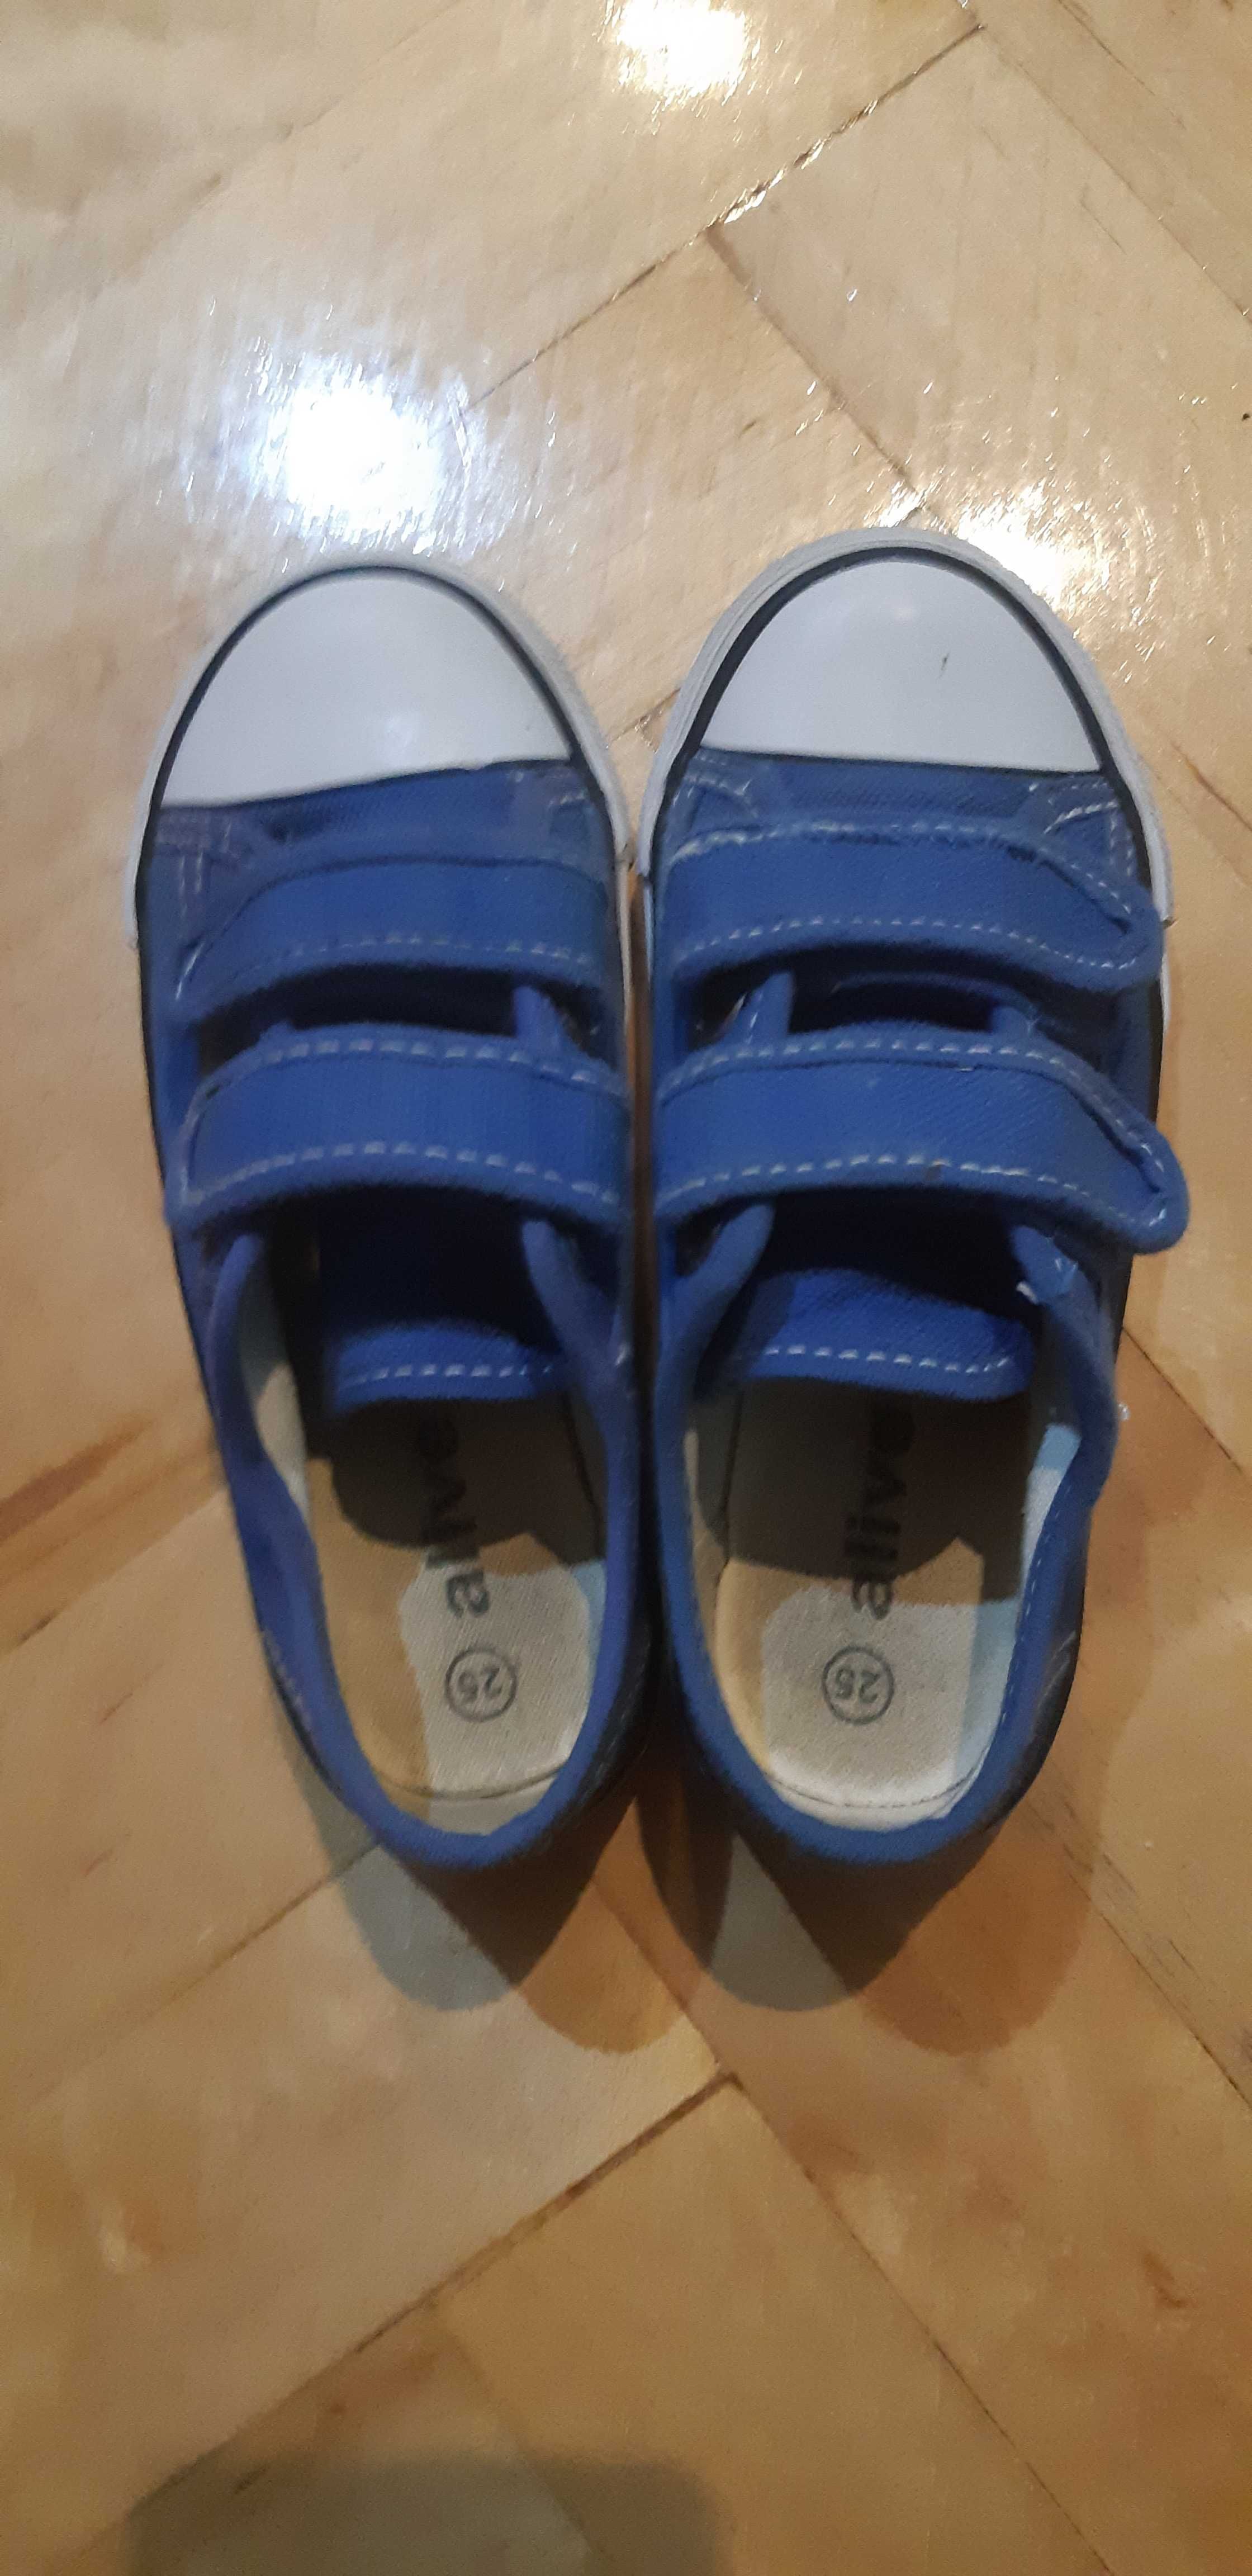 buty chłopięce trampki niebieskie rozmiar 25